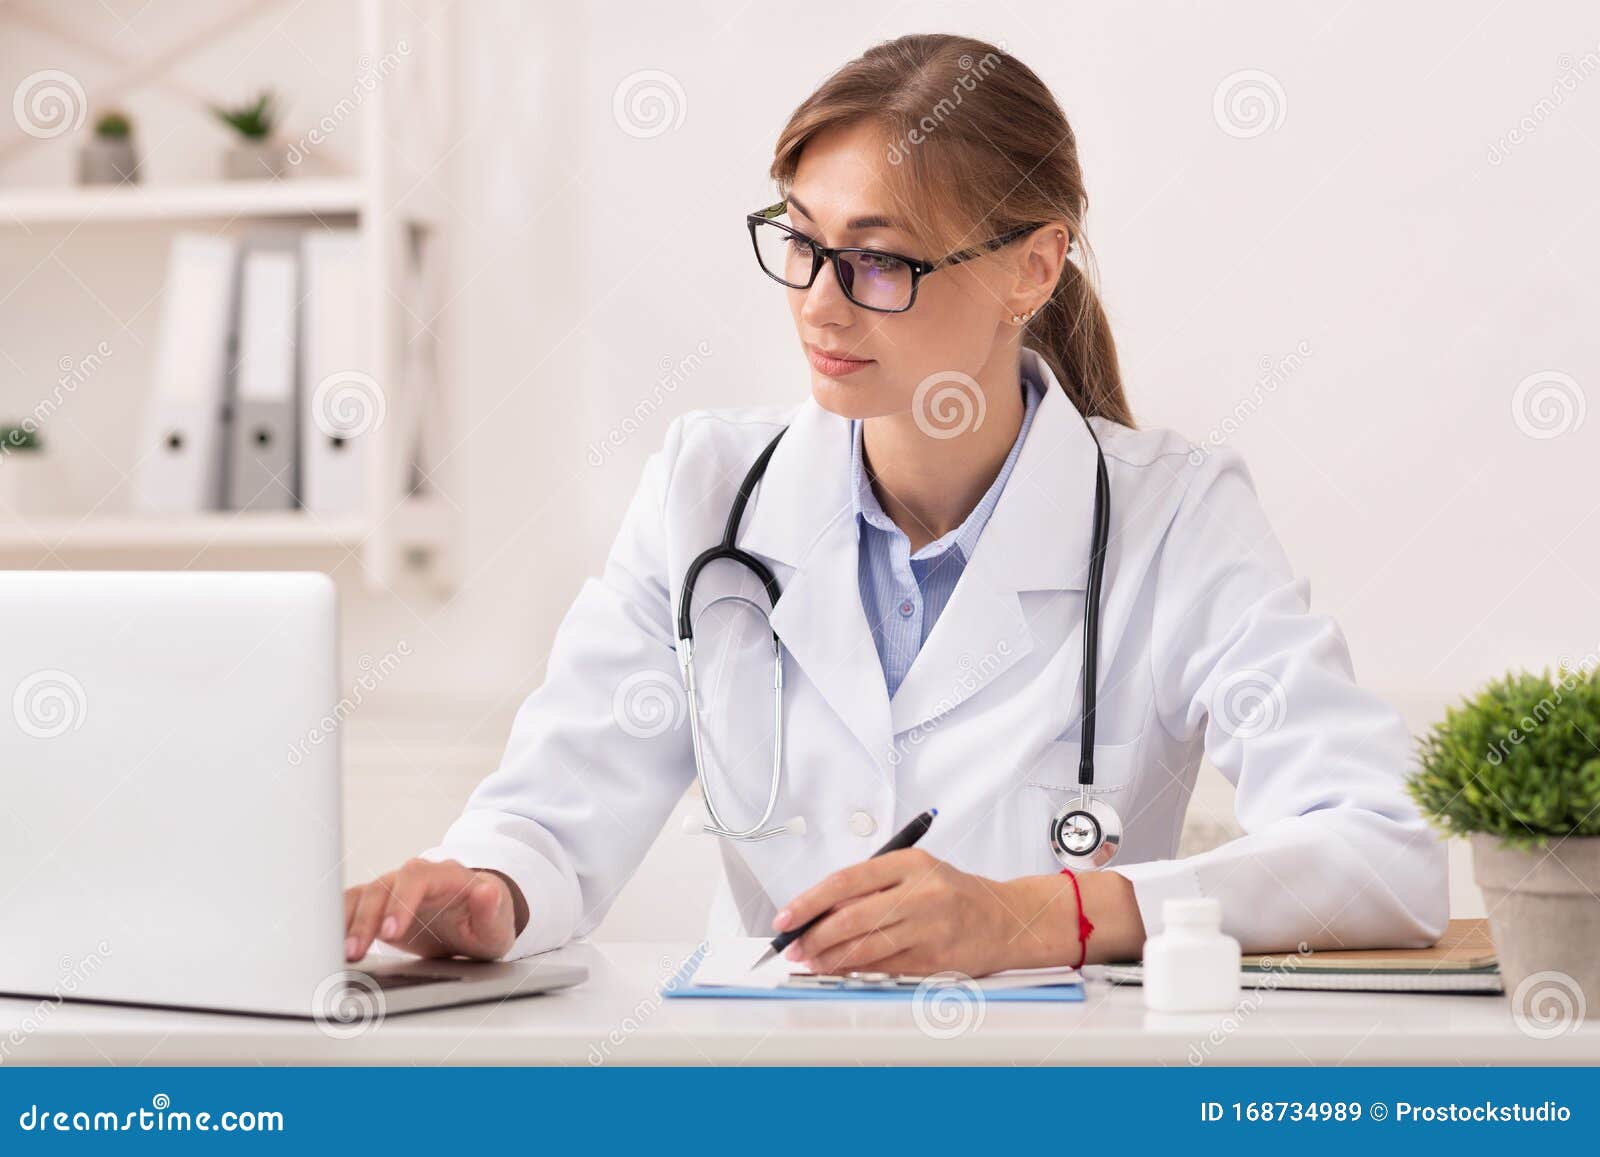 Doctora Mujer Trabajando En Portátil Tomando Notas Sentada En La Oficina  Imagen de archivo - Imagen de escritorio, hospital: 168734989